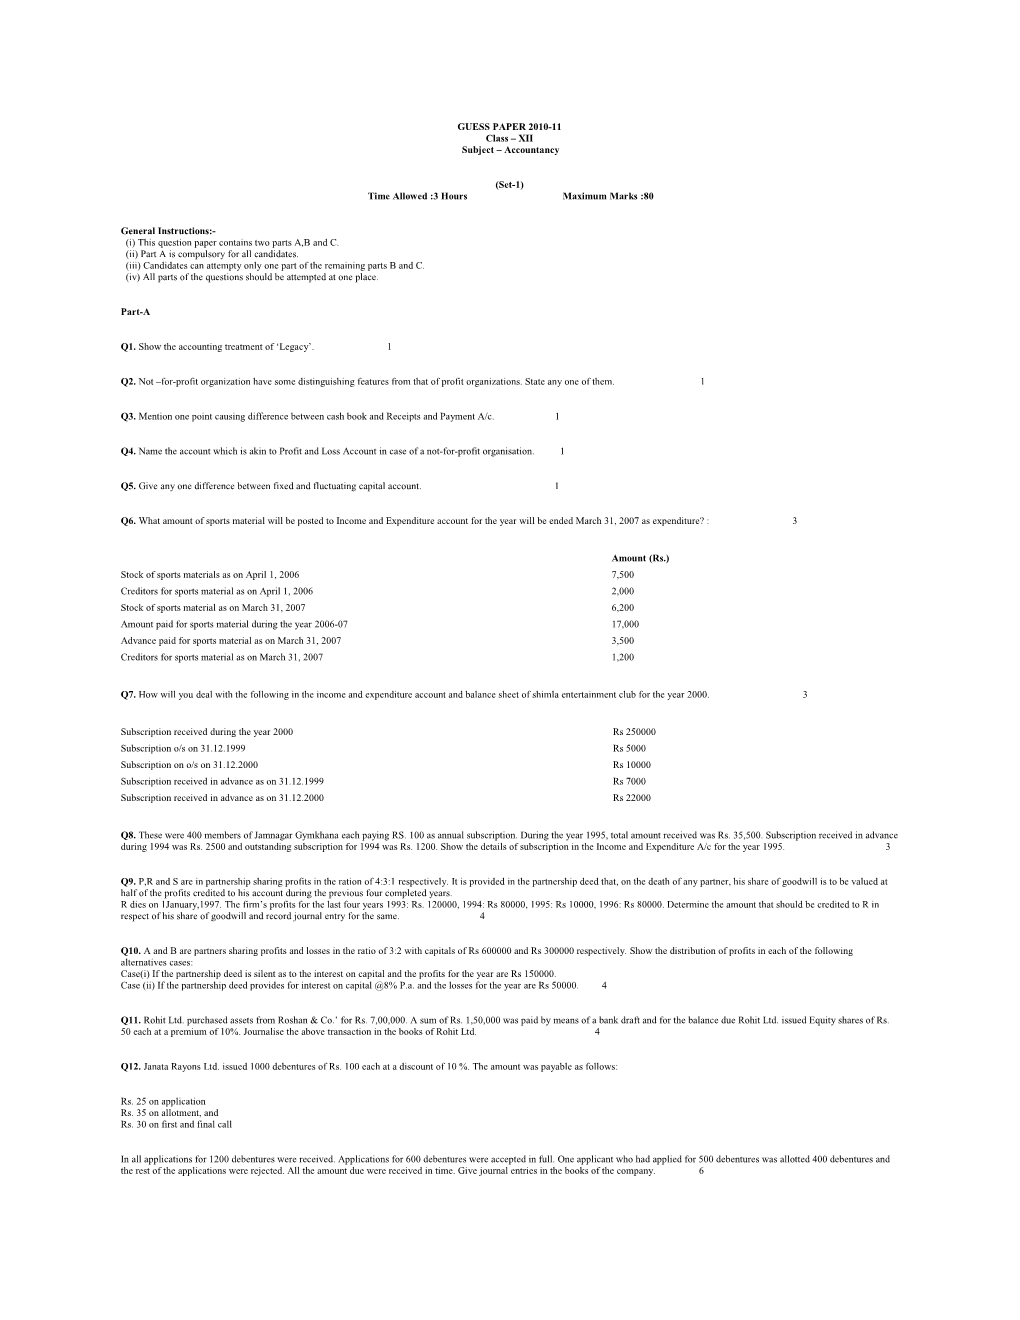 GUESS PAPER 2010-11 Class XII Subject Accountancy